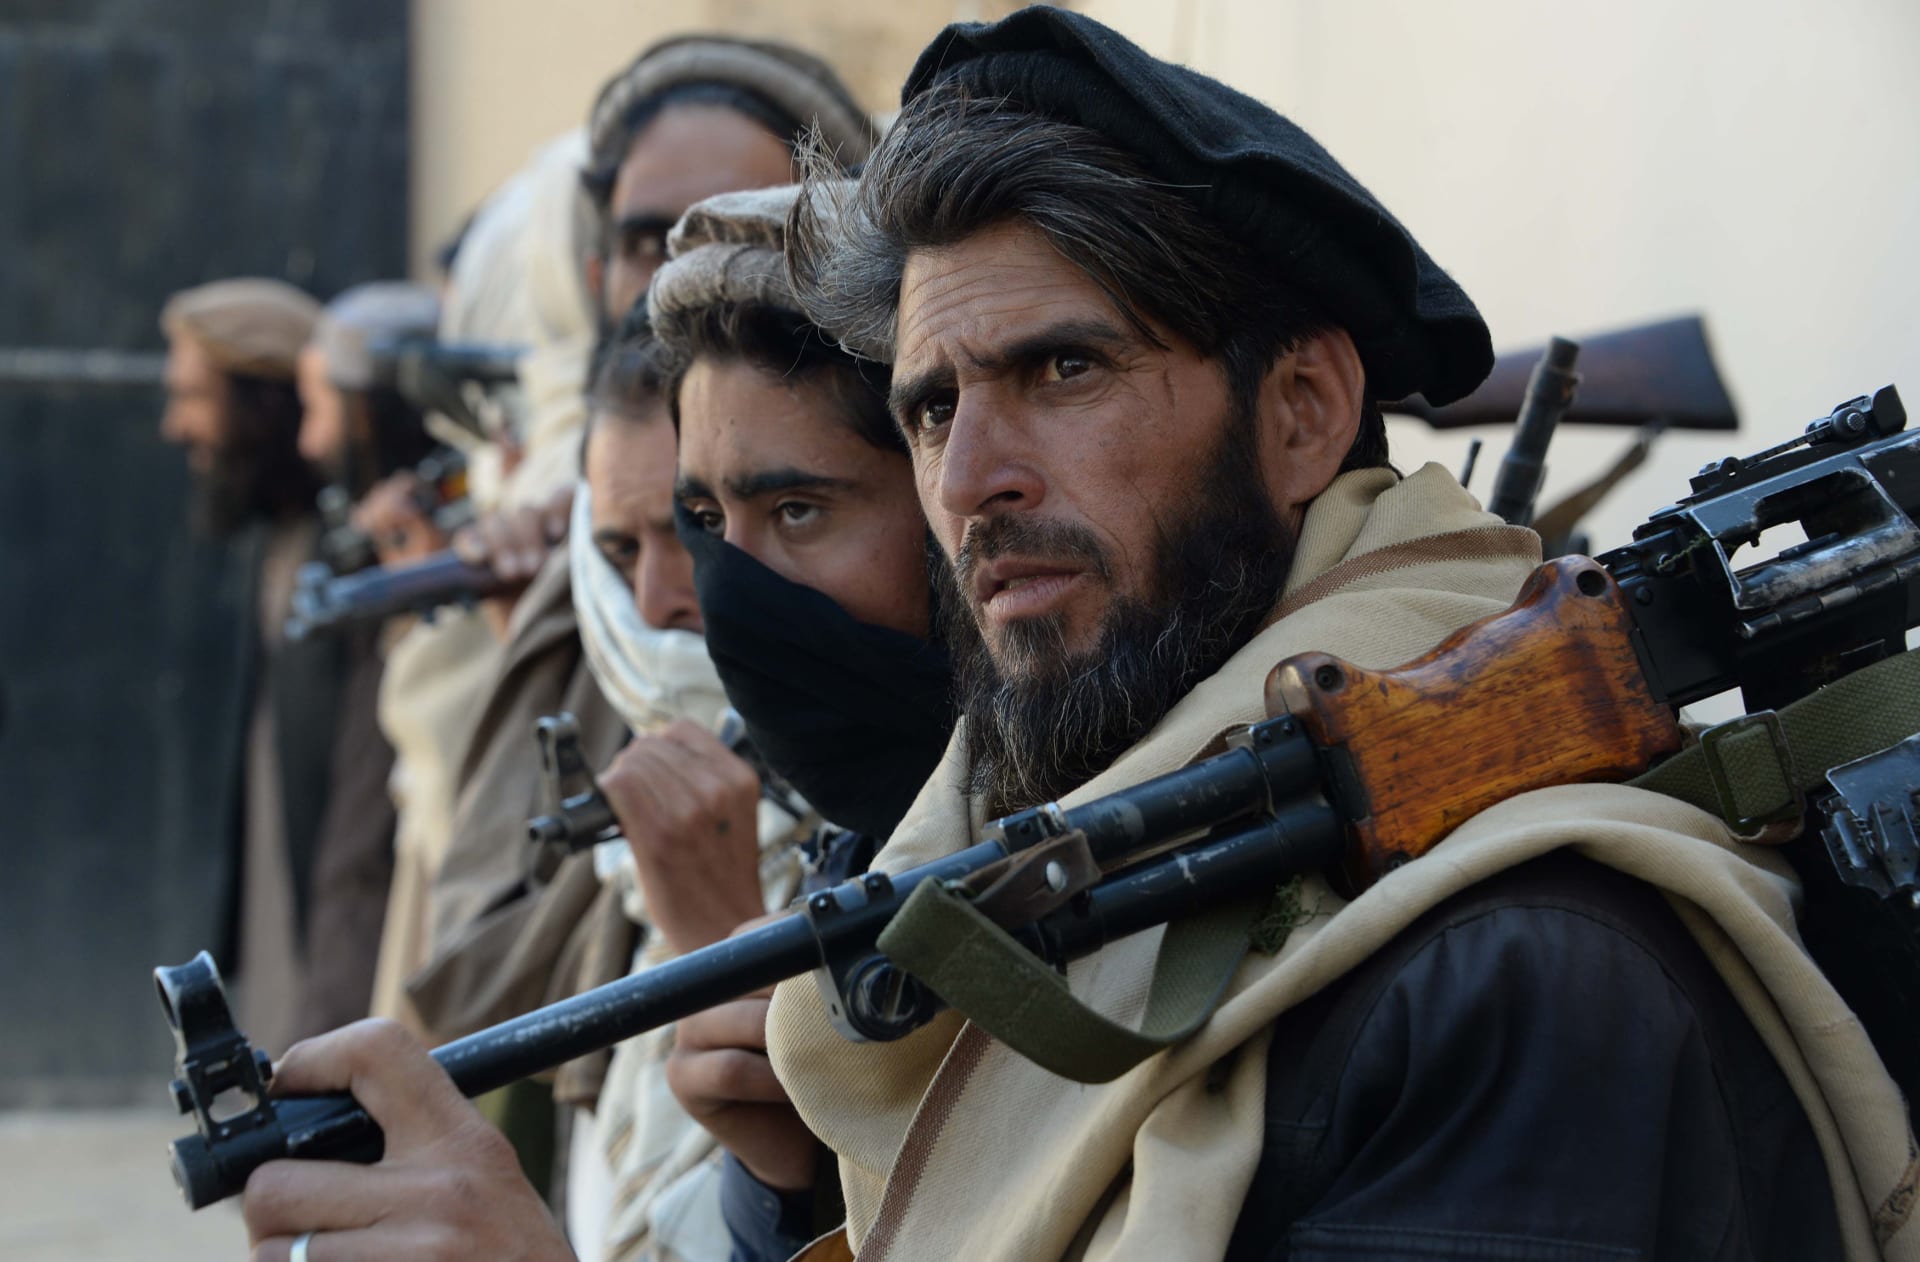 حركة "طالبان" تؤكد علنا لأول مرة مقتل زعيمها السابق وتعين الملا هيبة الله أخوندزاده خلفا له